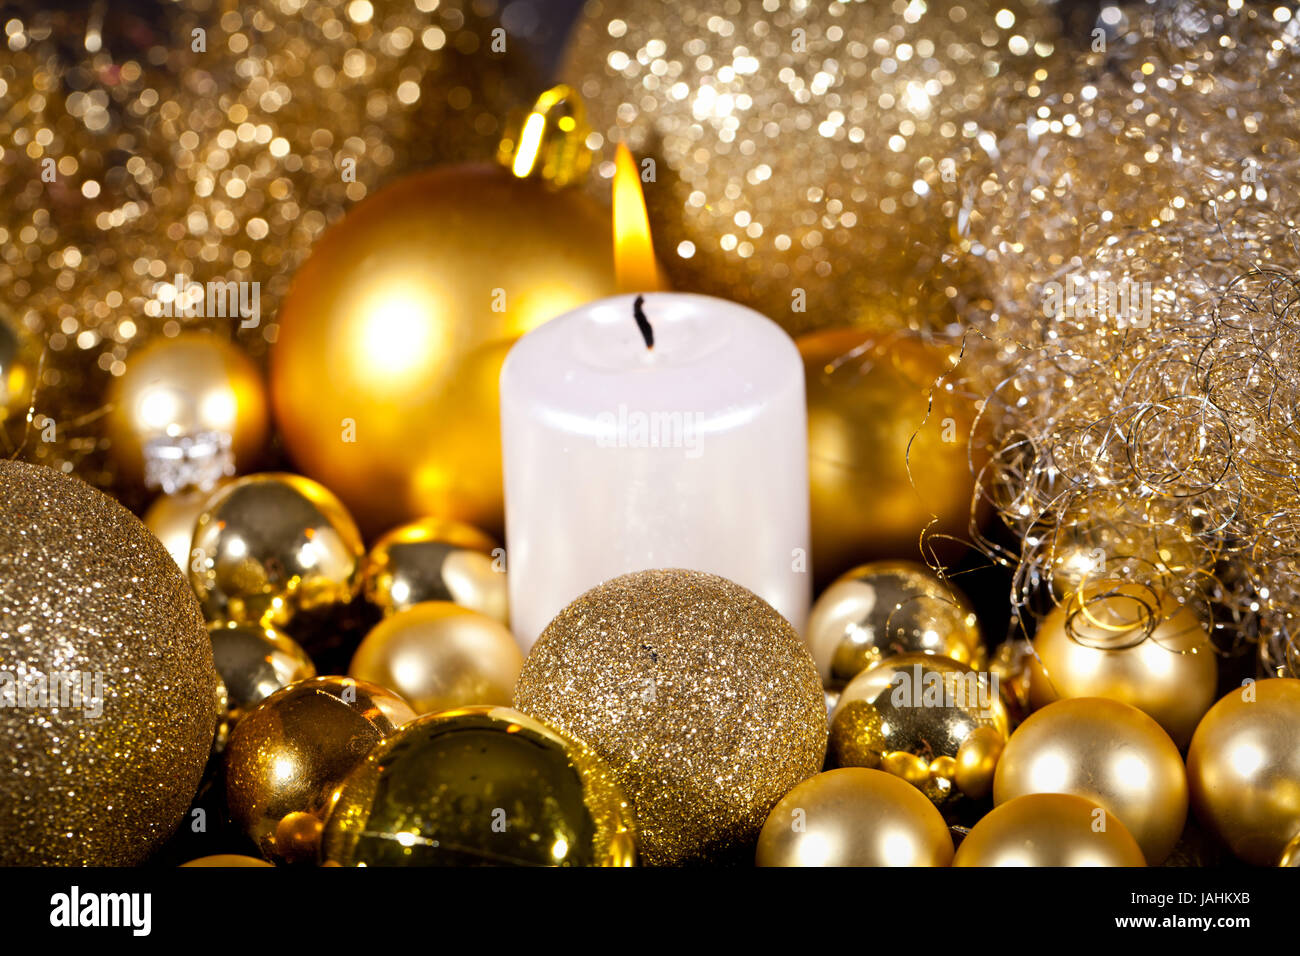 Festliche goldene weihnachtsdekoration kerzenlicht im schmuck christbaum avvento Foto Stock